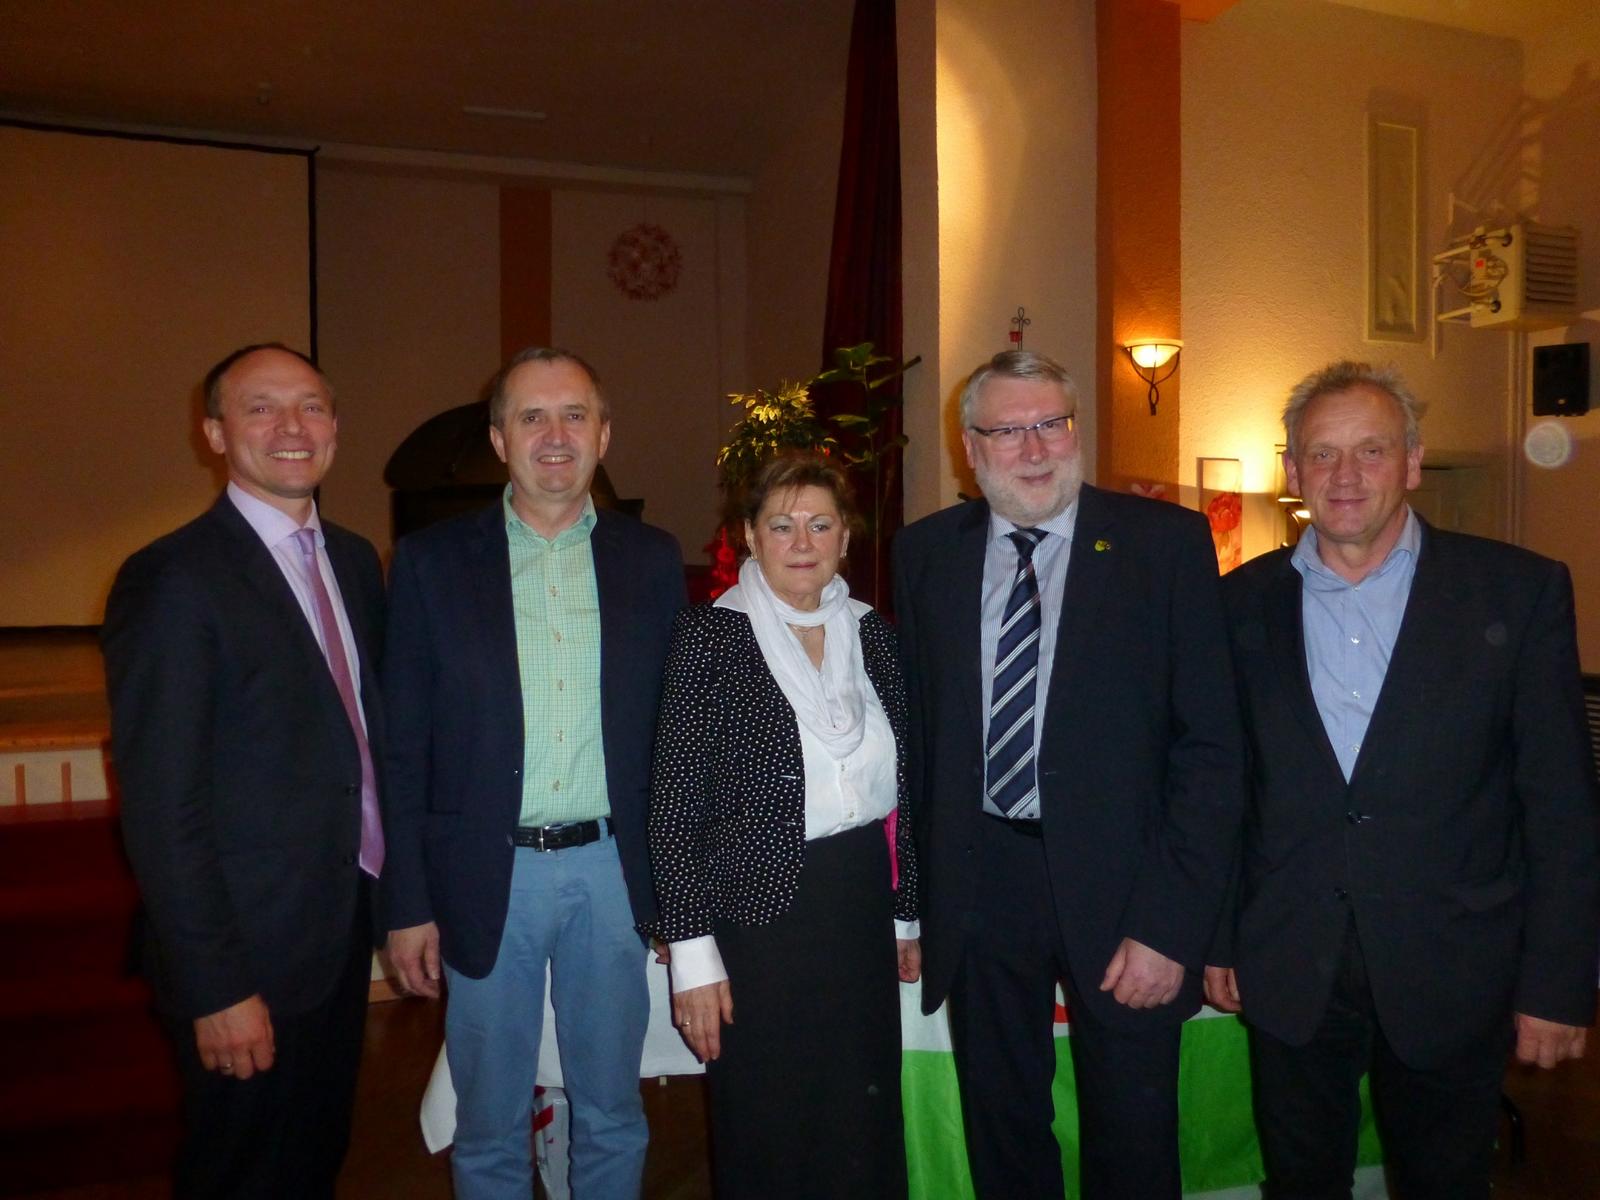 Nach der erfolgreichen Nominierung der Kandidaten gratulierten die Abgeordneten Marco Wanderwitz (1.v.l.), Thomas Schmidt (2.v.l.) und Dr. Peter Jahr (1.v.r.) recht herzlich.